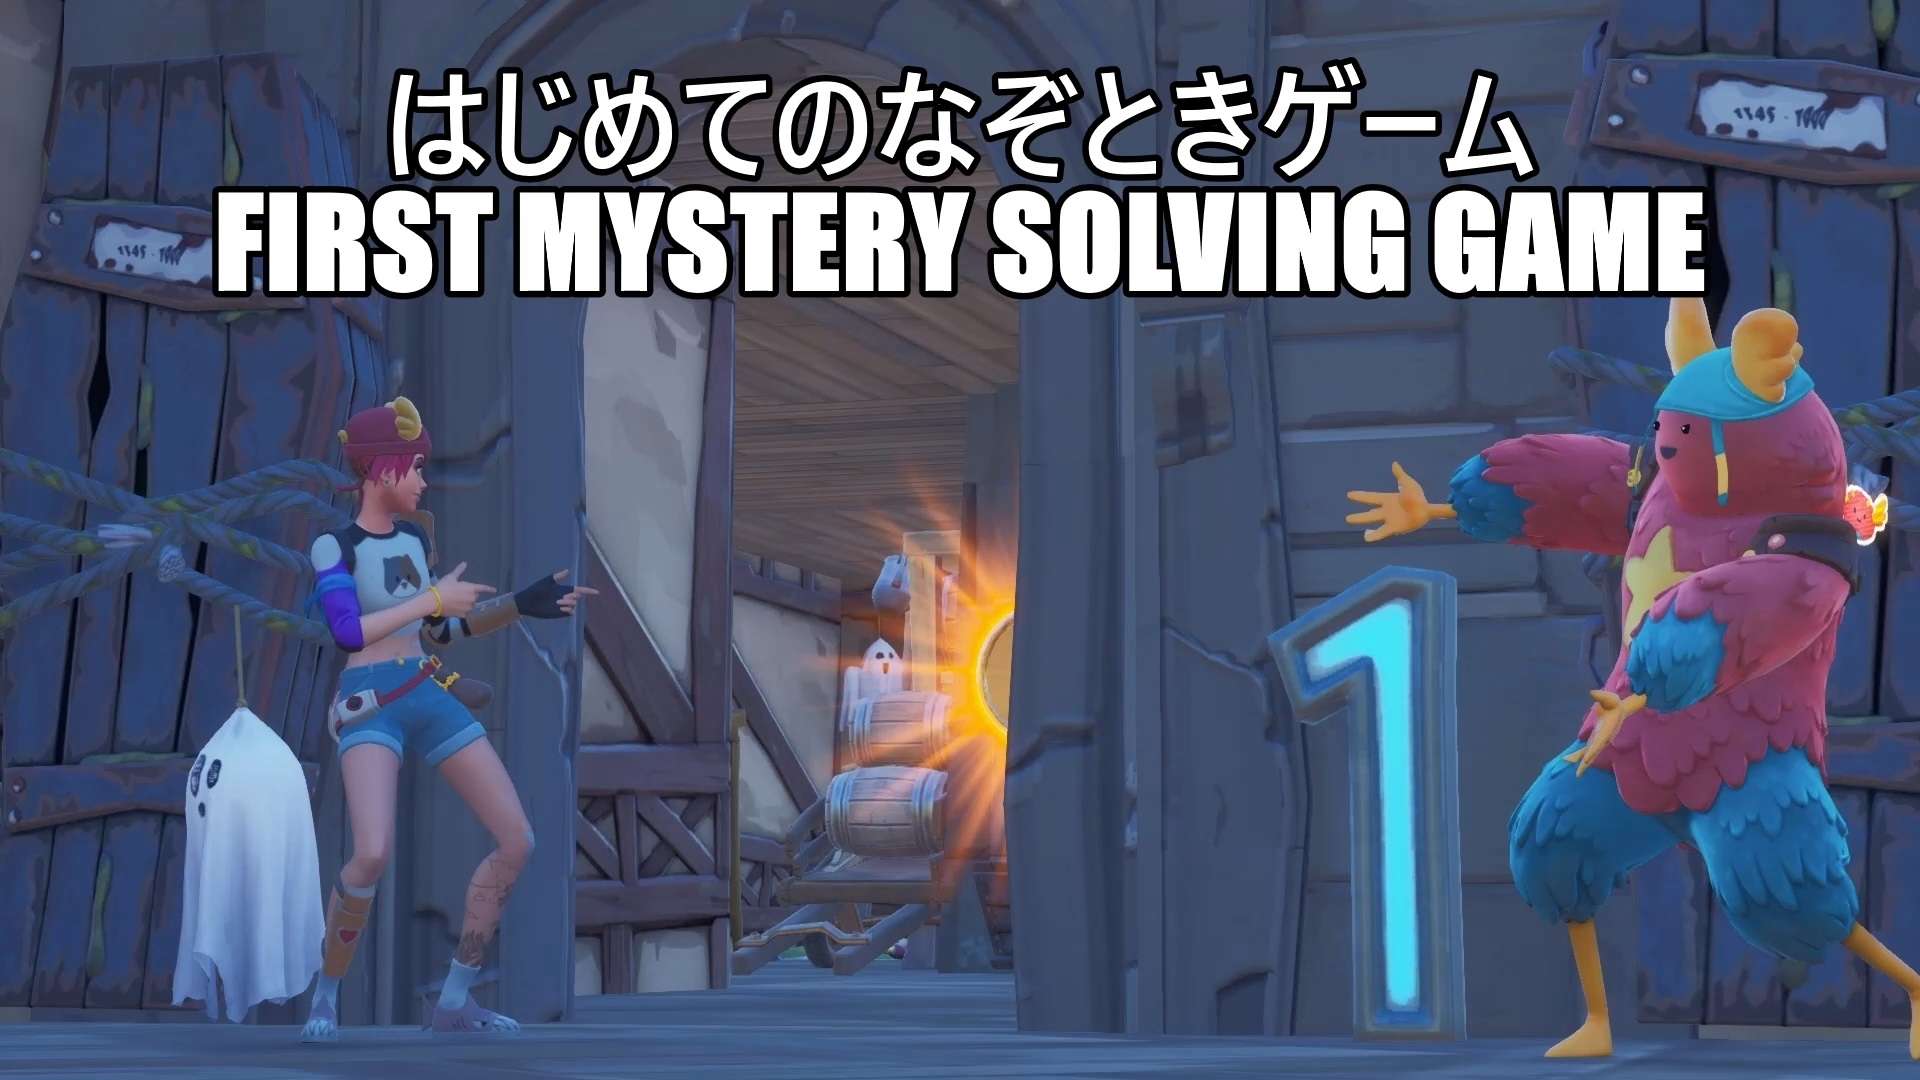 はじめてのなぞときゲーム/ First Mystery solving game